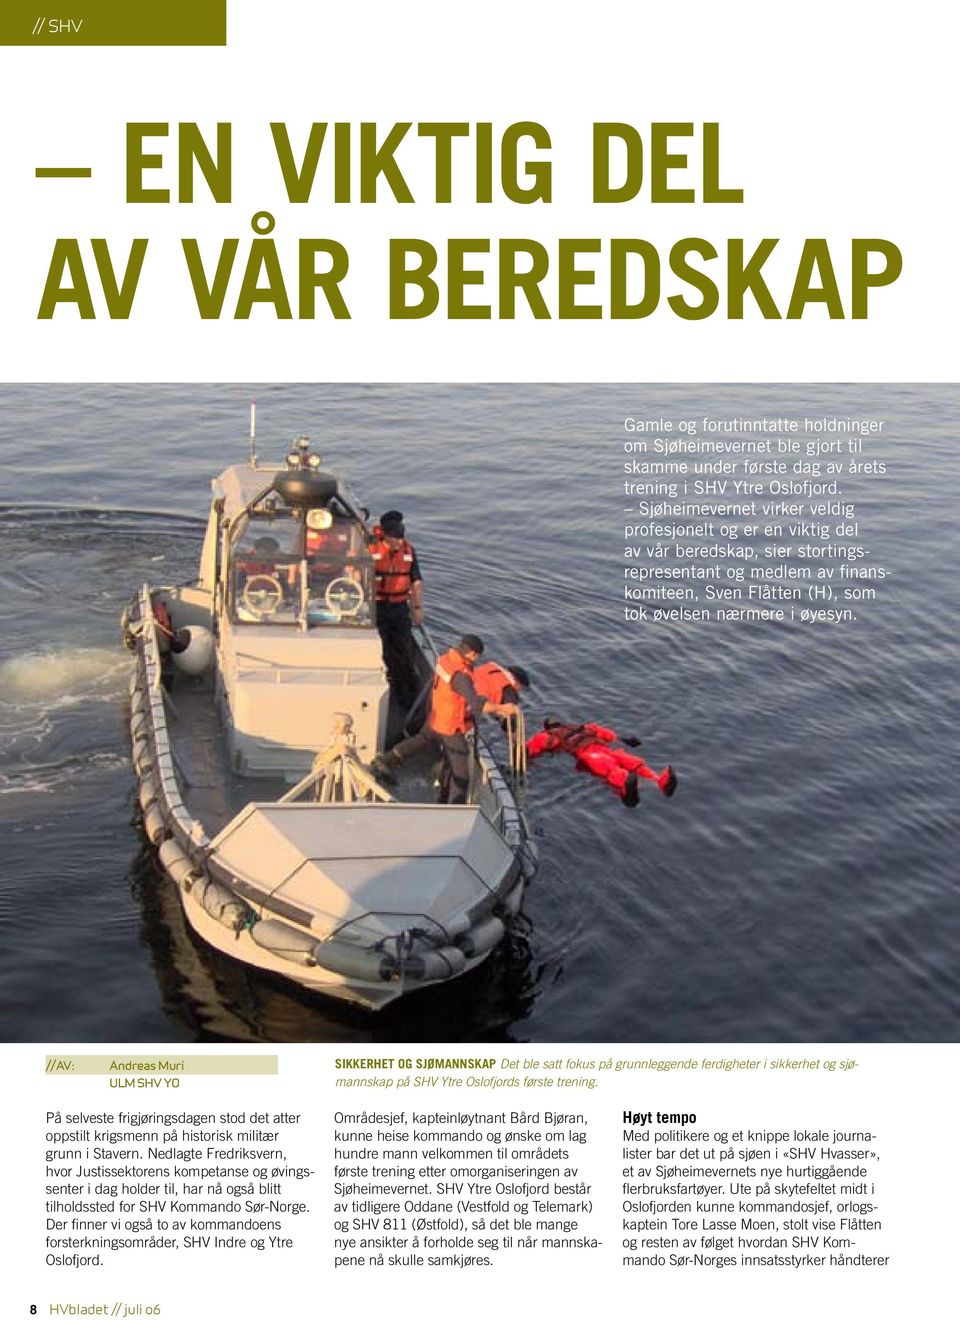 //AV: Andreas Muri ULM SHV YO SIKKERHET OG SJØMANNSKAP Det ble satt fokus på grunnleggende ferdigheter i sikkerhet og sjømannskap på SHV Ytre Oslofjords første trening.